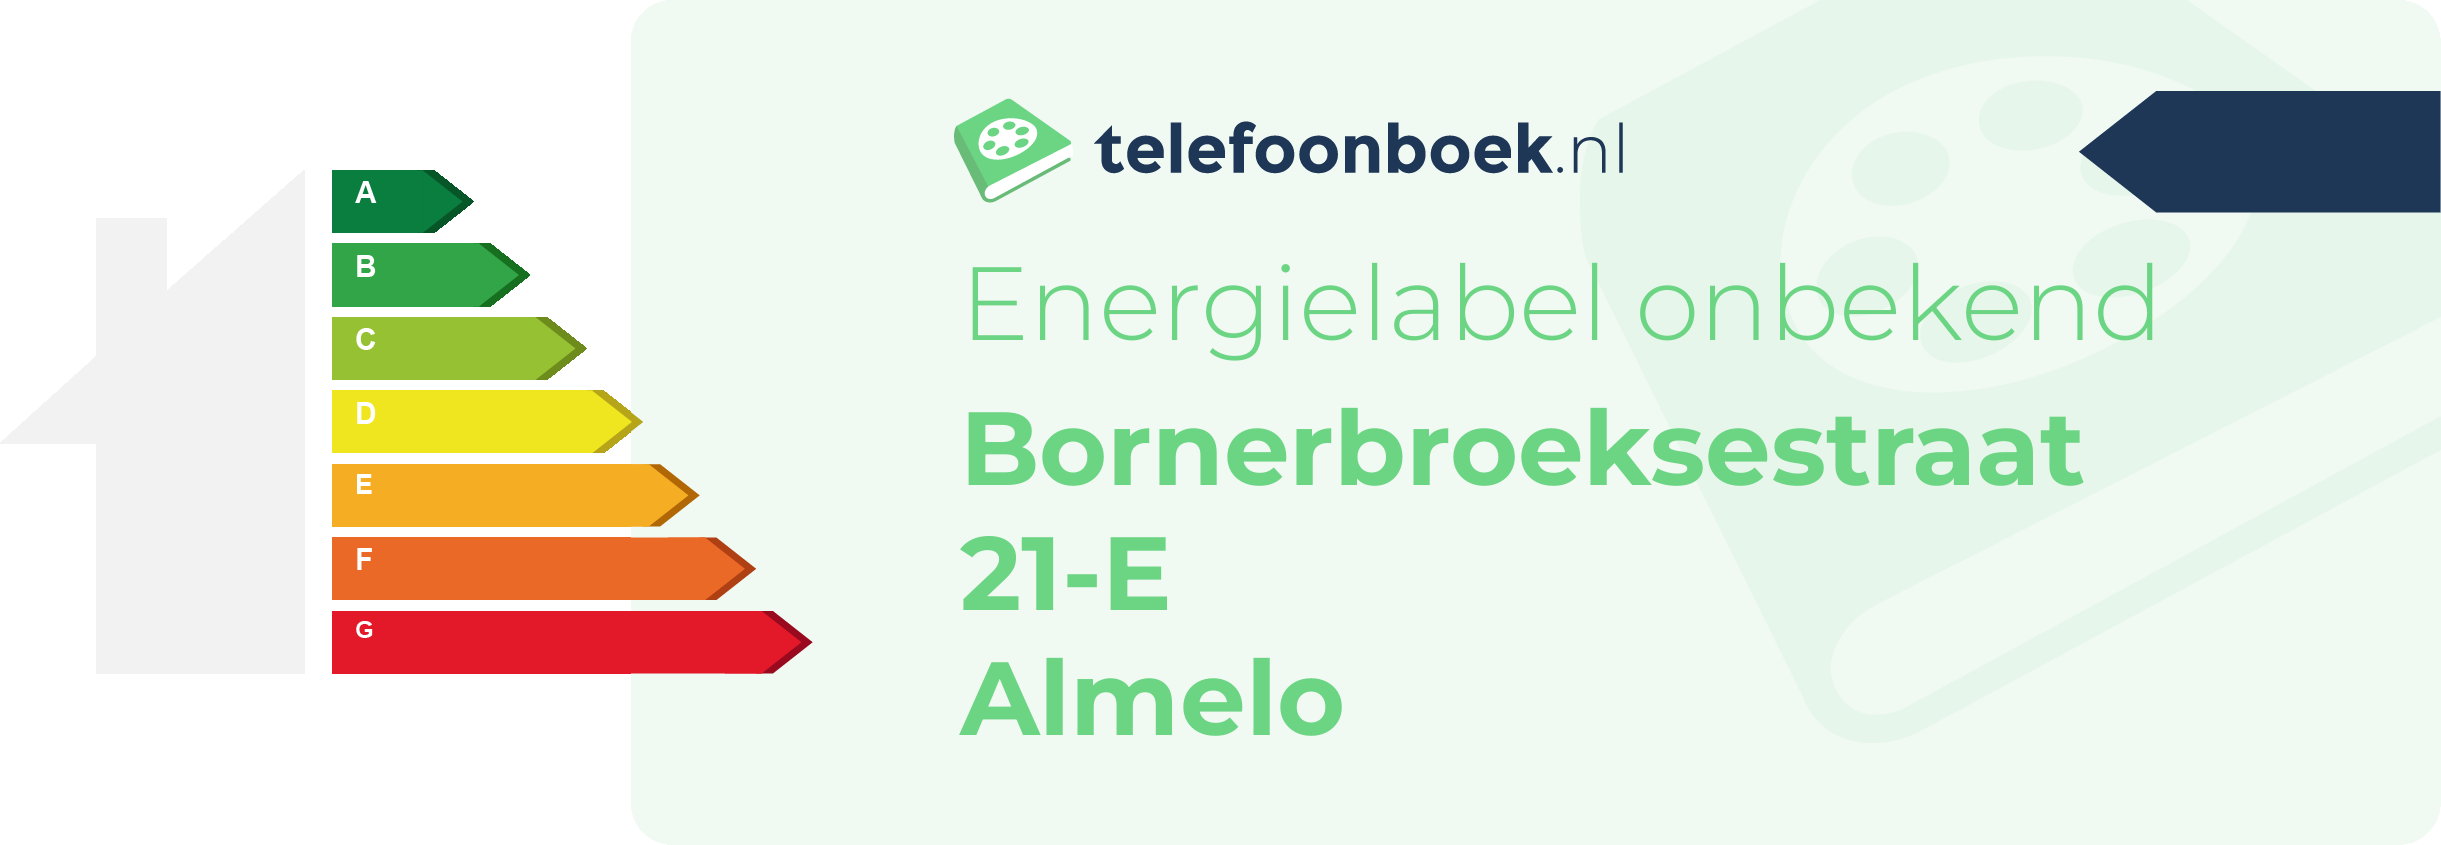 Energielabel Bornerbroeksestraat 21-E Almelo